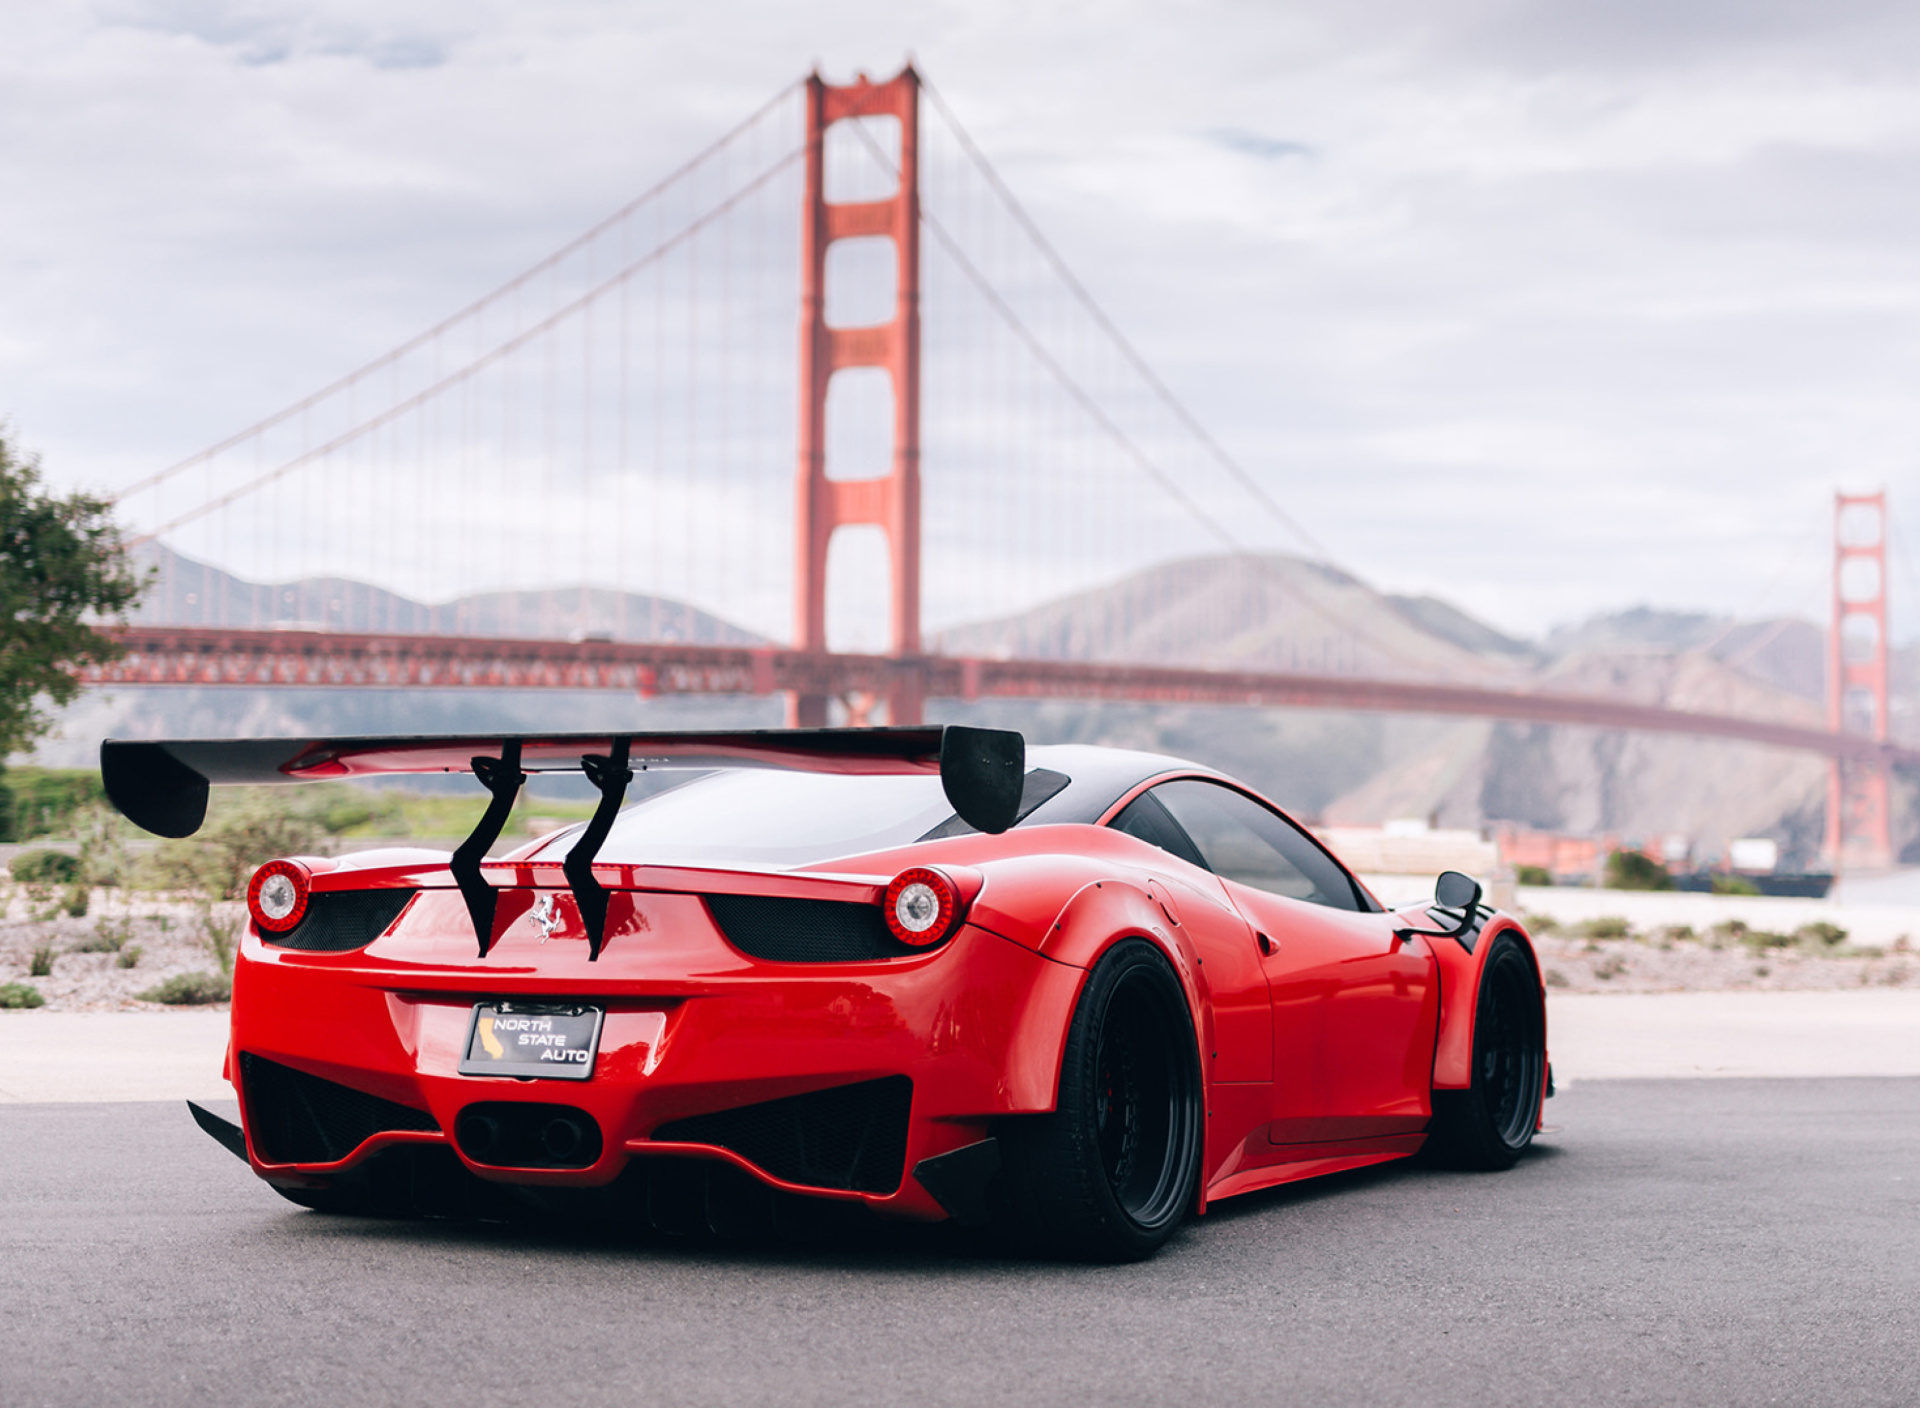 Ferrari 458 Italia near Golden Gate Bridge screenshot #1 1920x1408